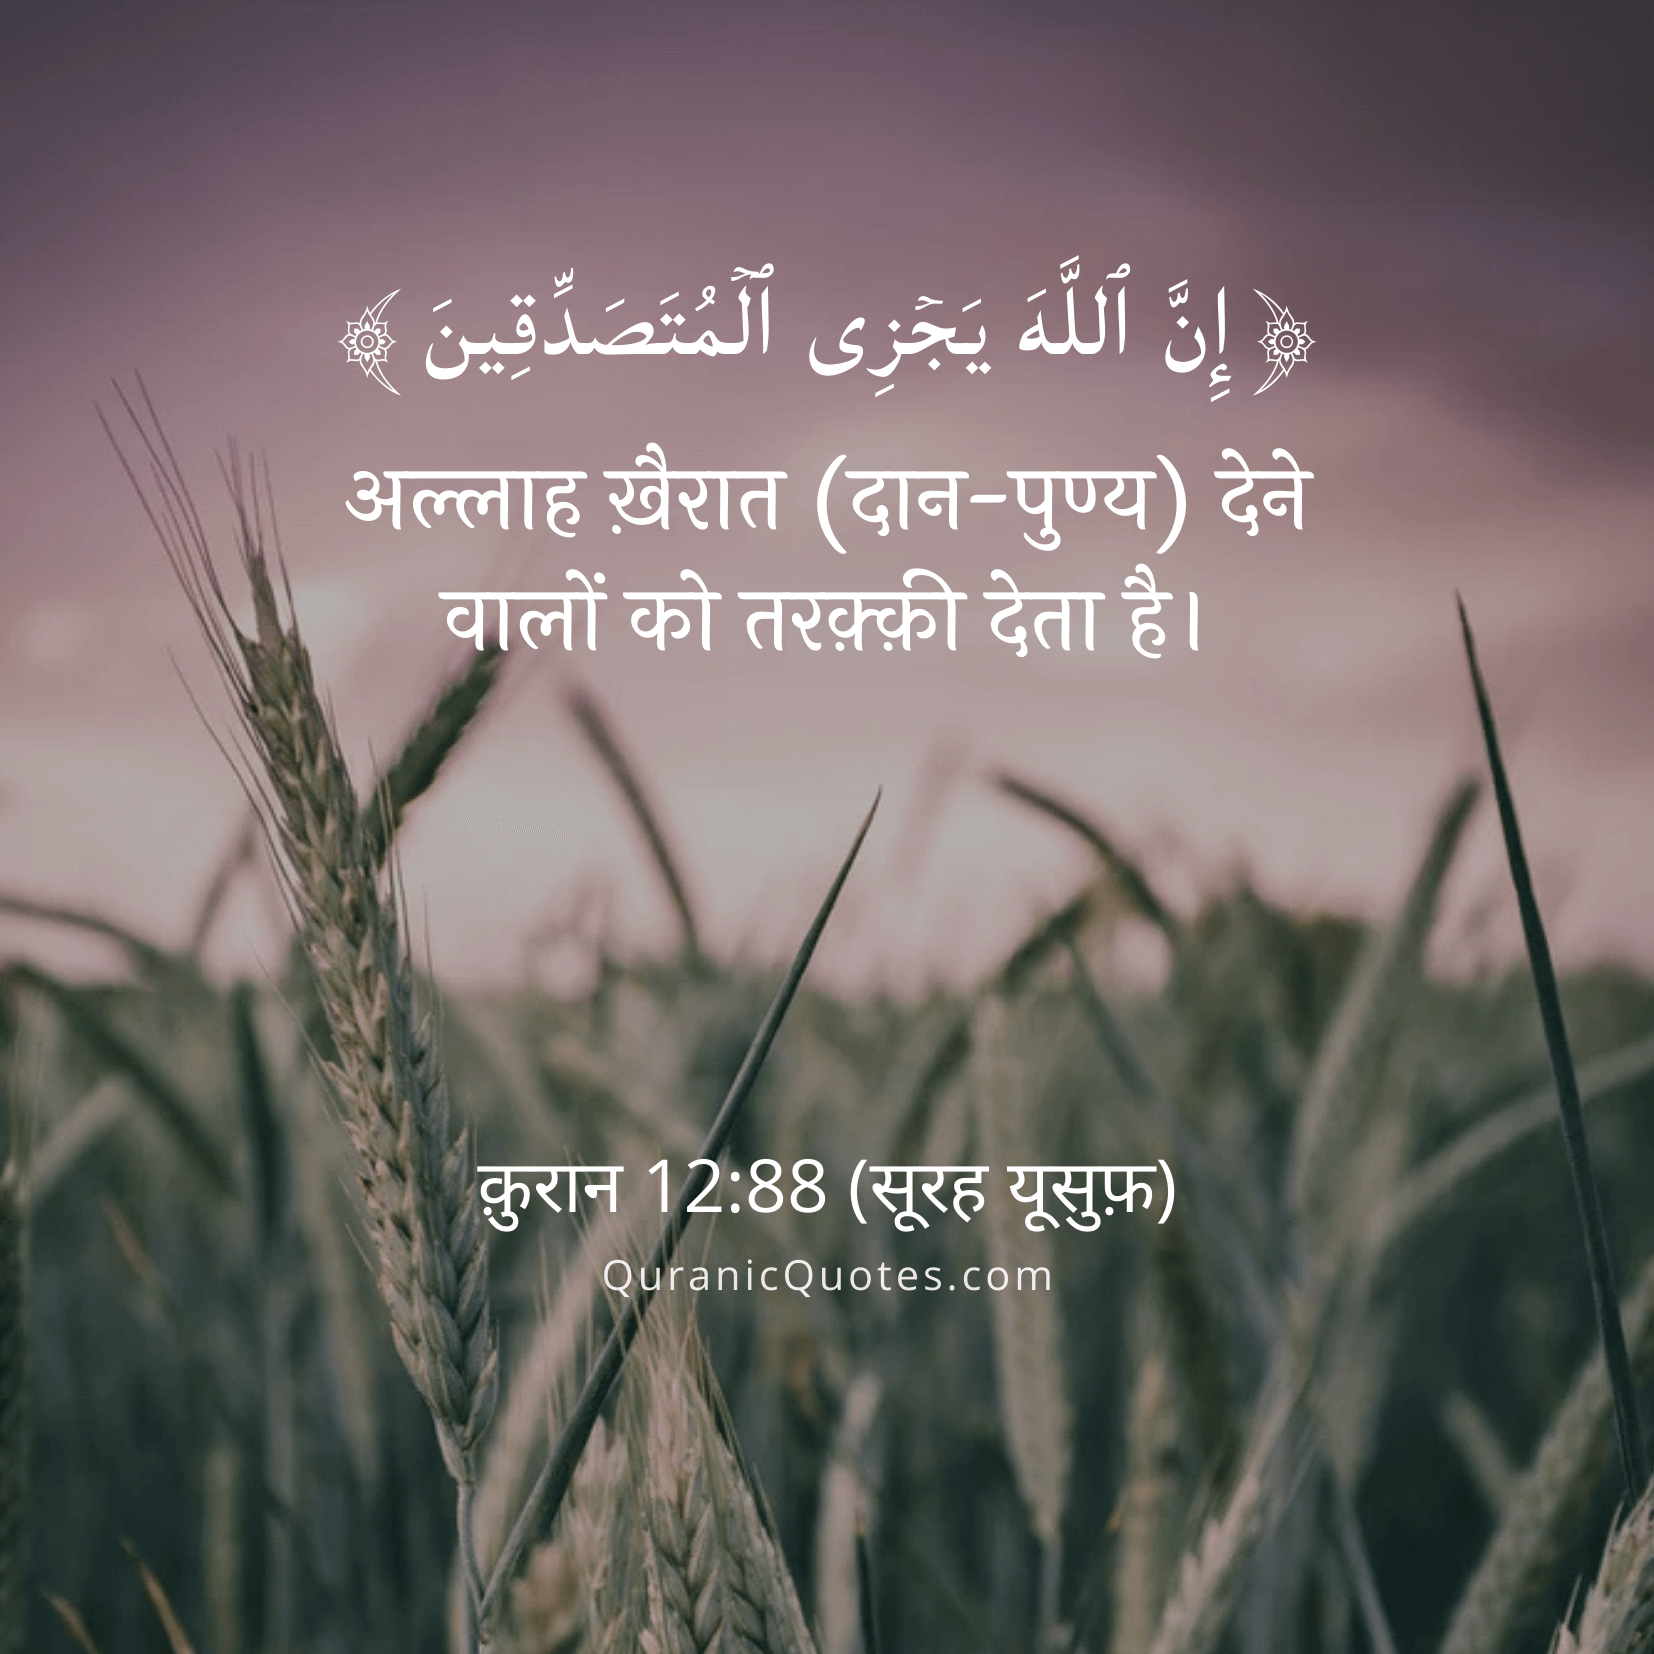 Quranic Quotes Hindi #192Quranic Quotes Hindi #212